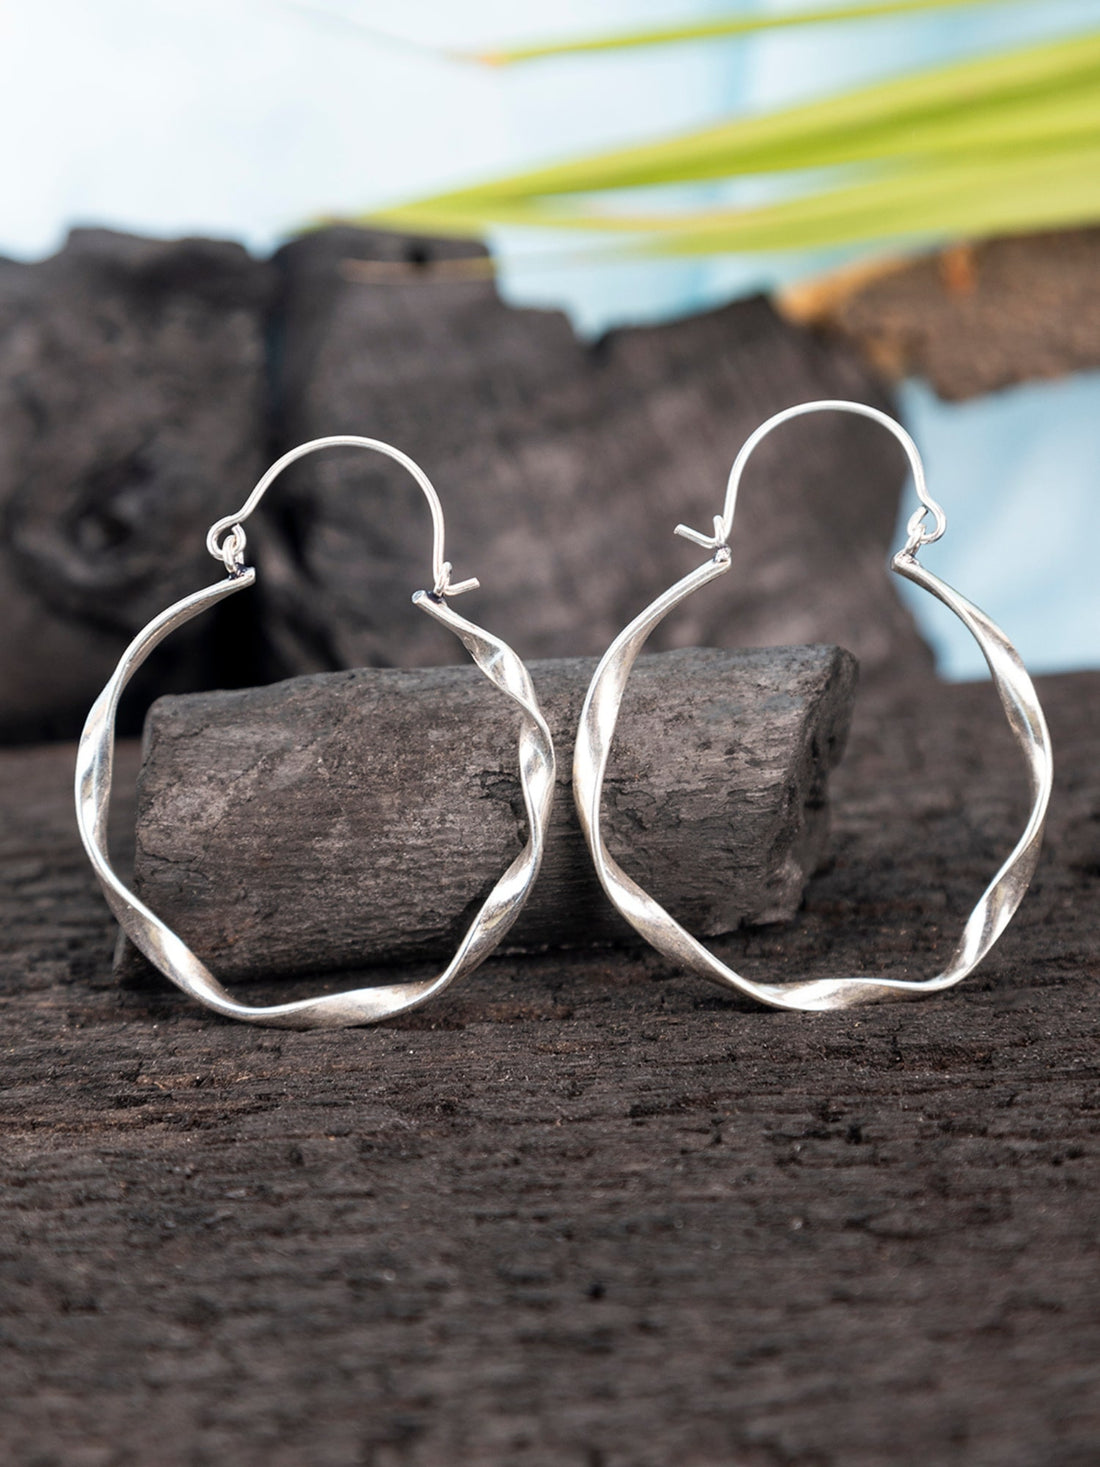 Work Wear Hoops Earrings - Minimal Silver-Plated Brass Earrings By Studio One Love